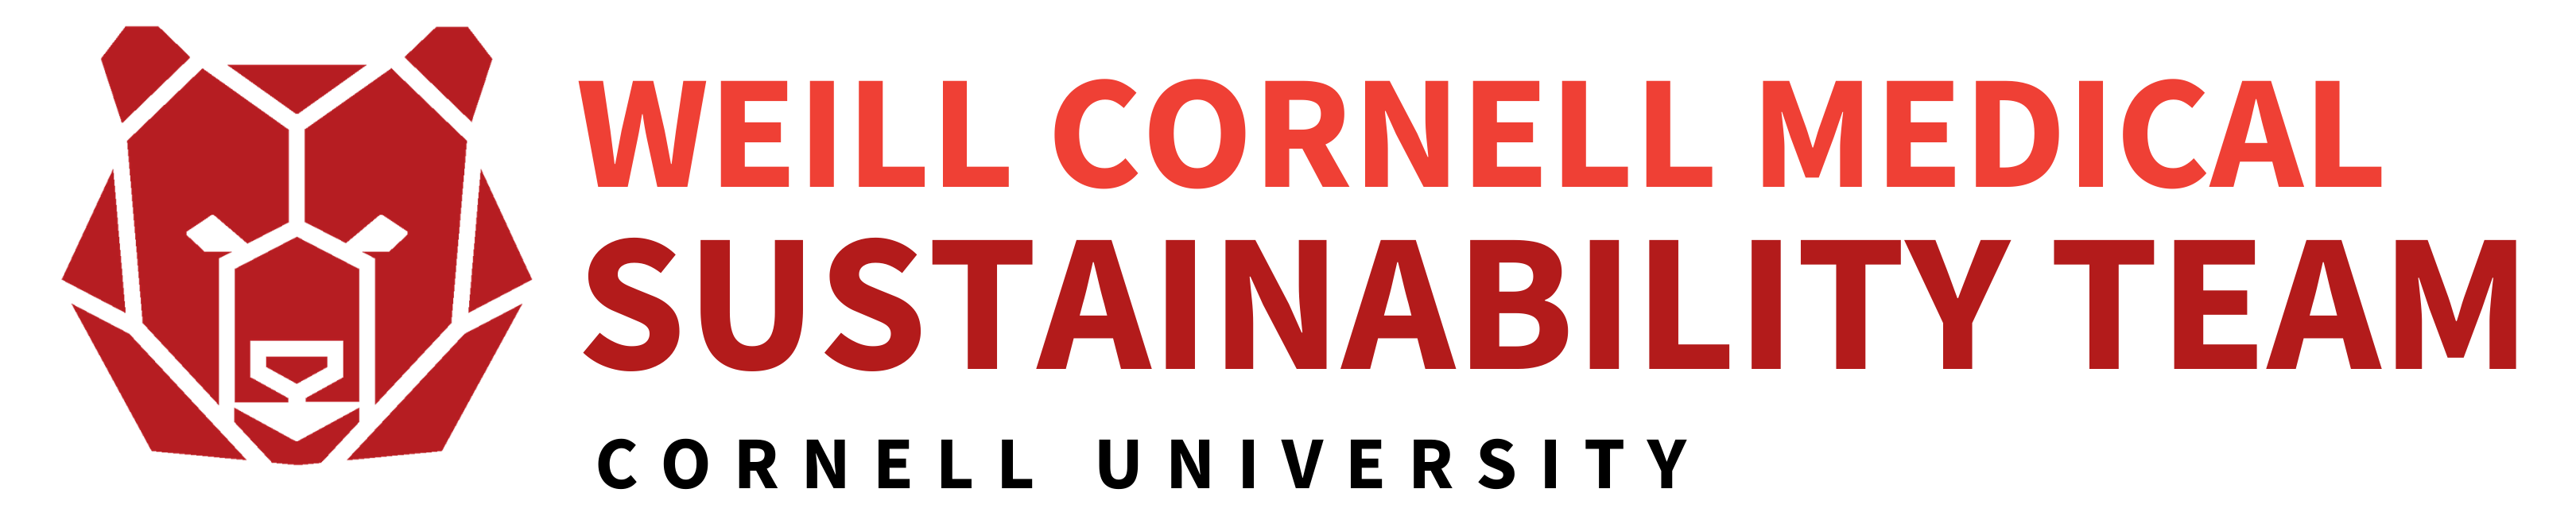 Weill Cornell green team logo